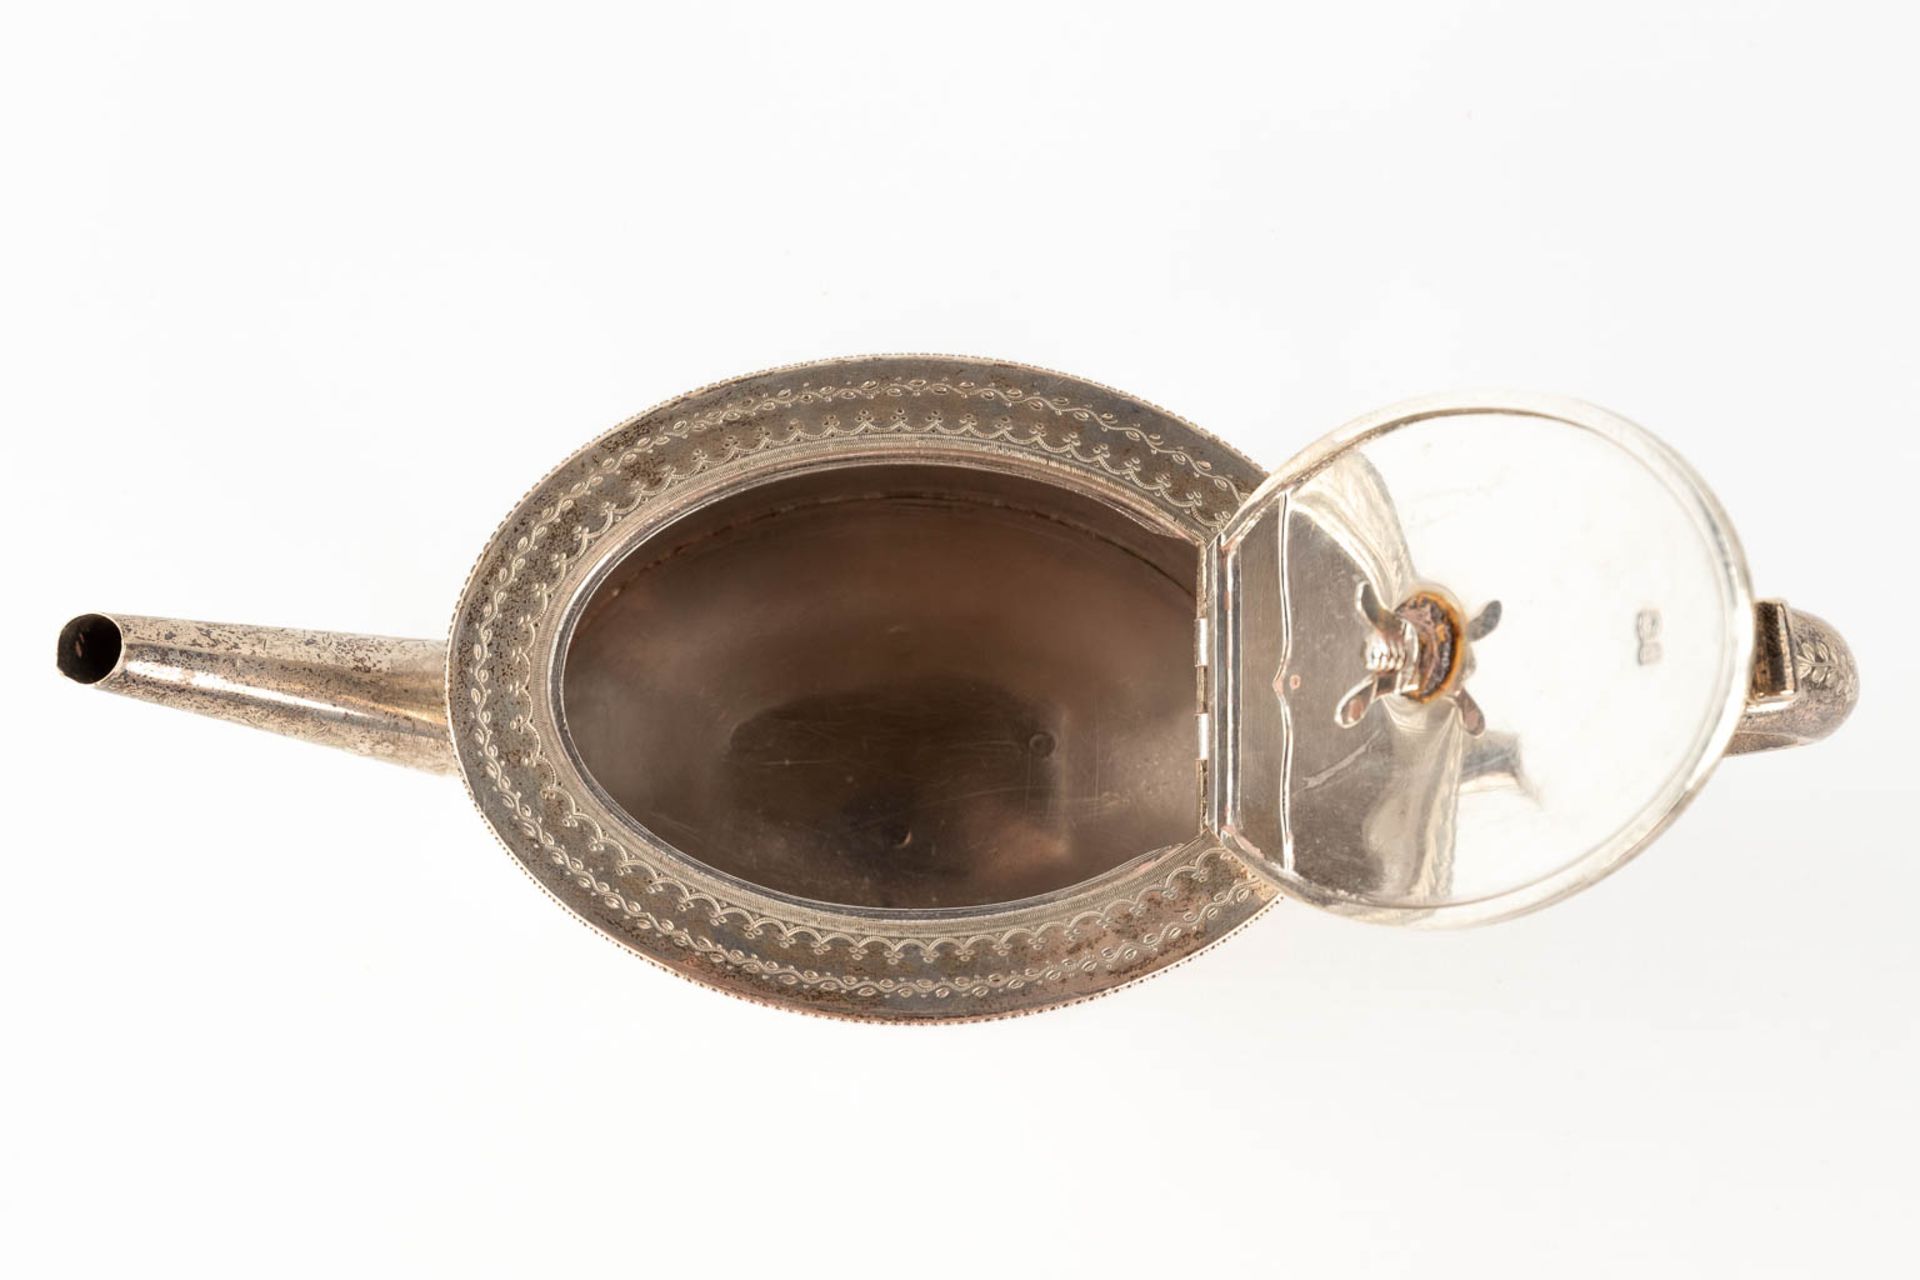 An antique tea pot, silver, London, 19th century. 520g. (L: 10 x W: 26 x H: 13 cm) - Image 13 of 14